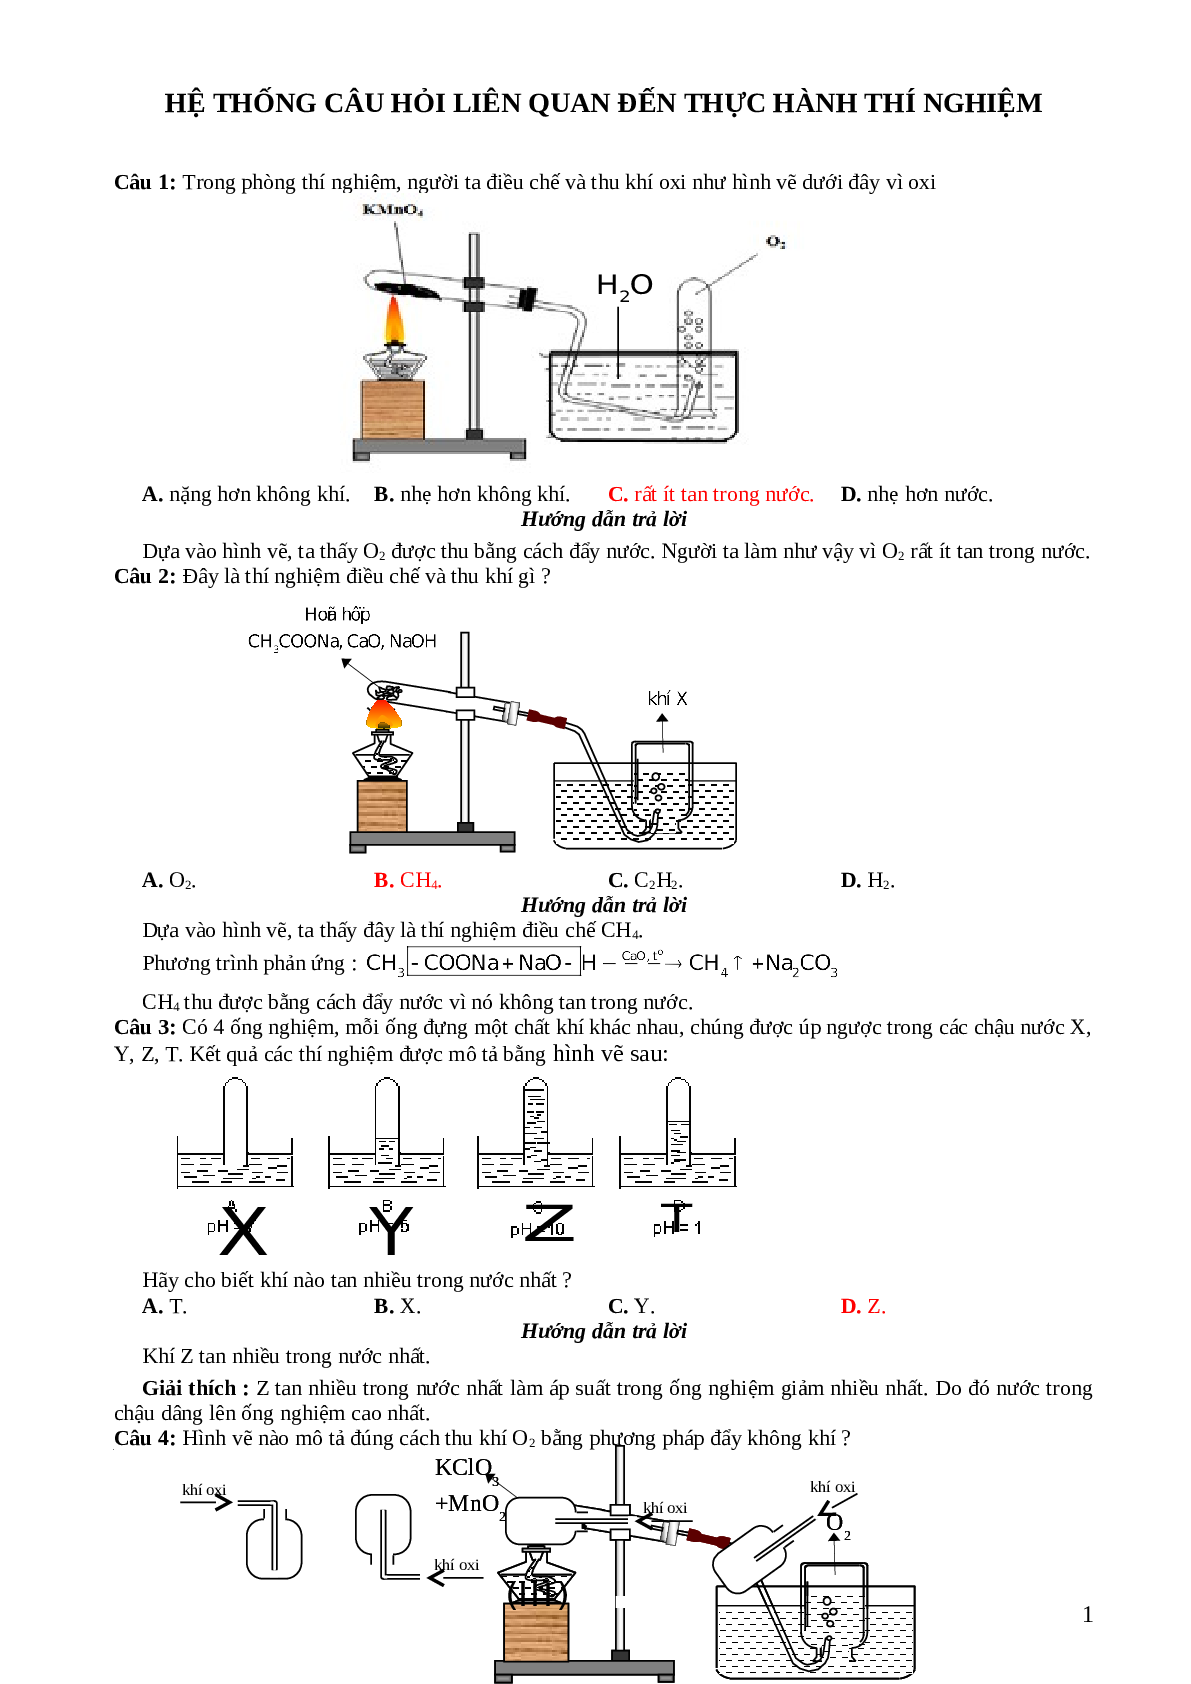 33 câu trắc nghiệm về hình  vẽ thí nghiệm hóa học lớp 12 có đáp án 2023 (trang 1)